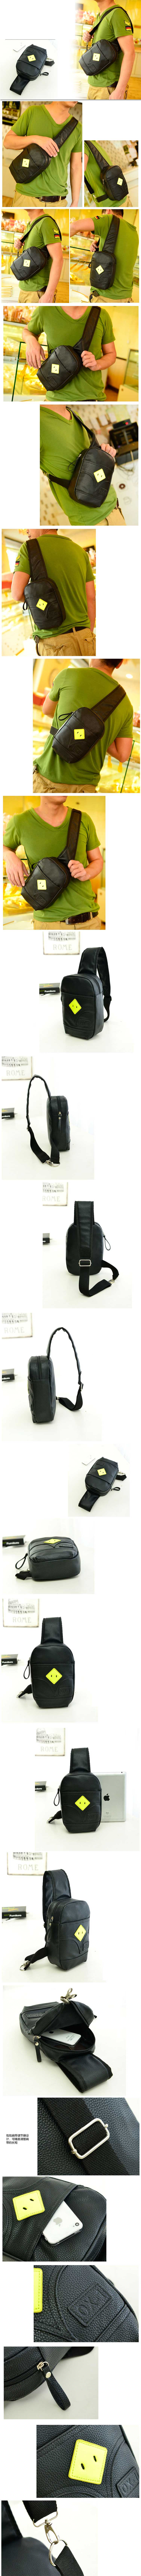 cari tas gadget dari bahan kulit ? klik dan pesan disini , toko online tas dengan koleksi terlengkap dan harga murah namun berkualitas.